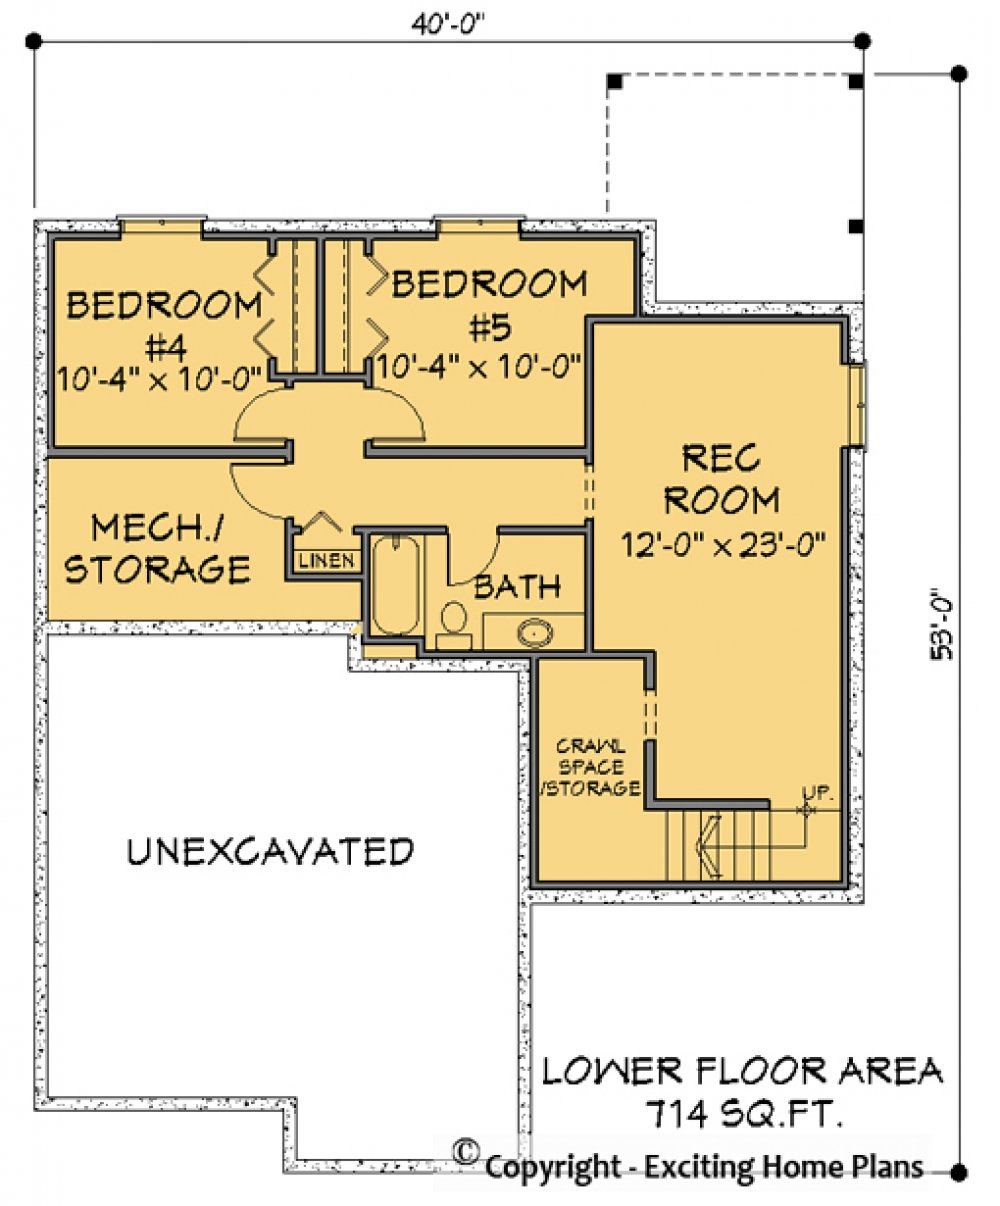 House Plan E1179-10 Lower Floor Plan